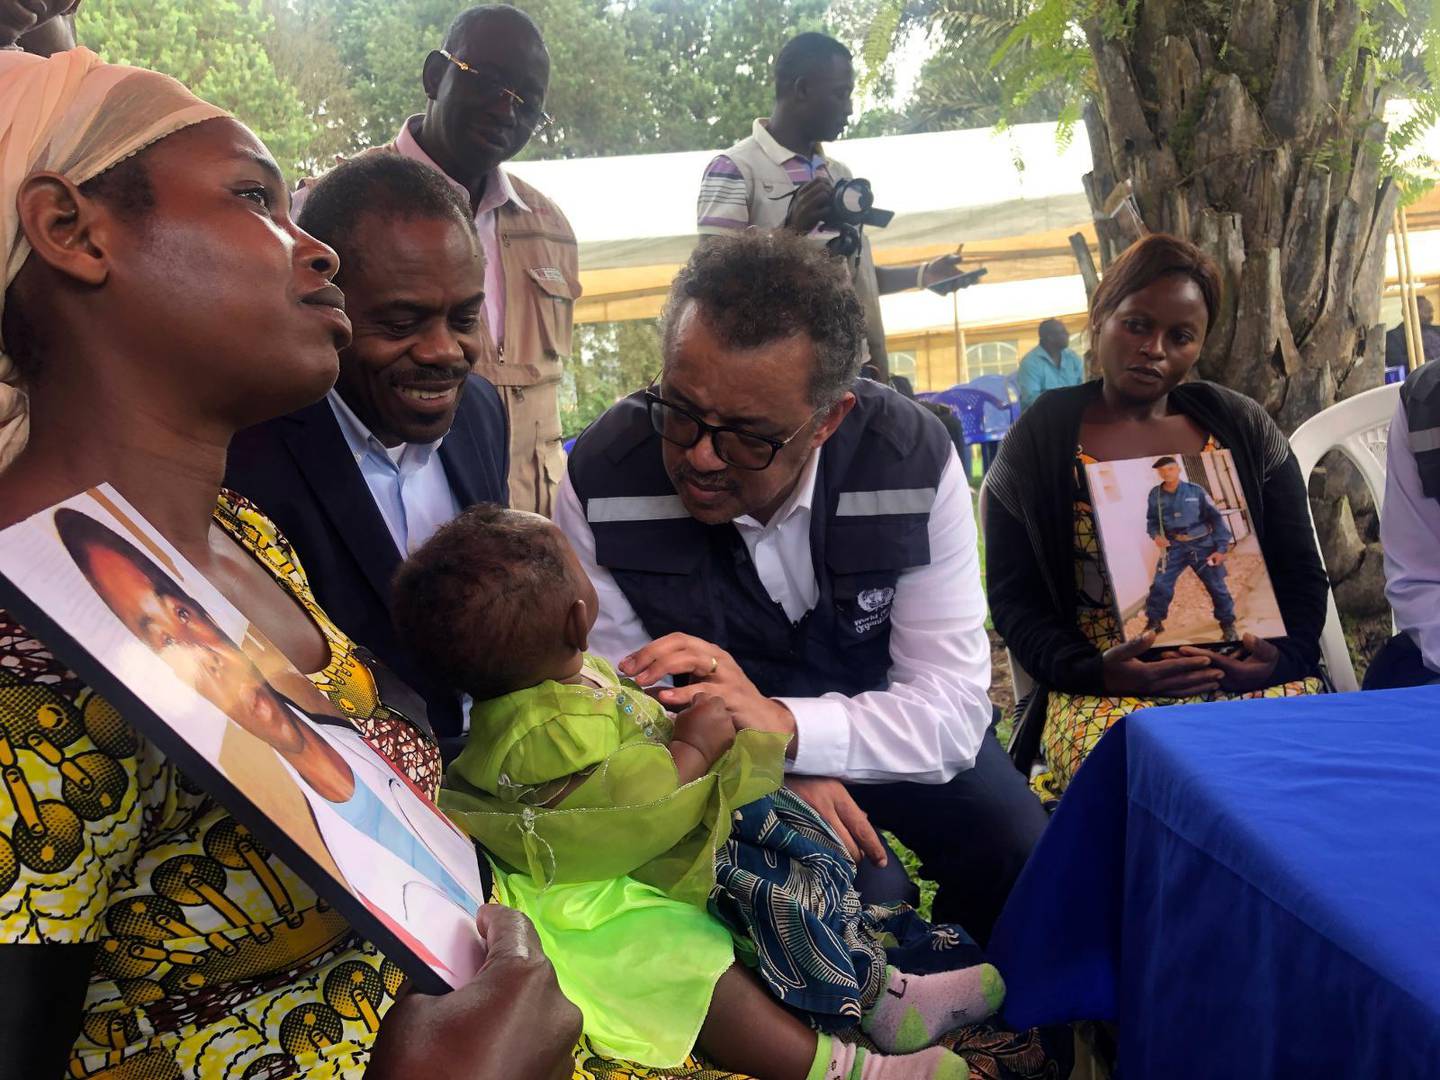 Världshälsoorganisationen WHO oroas av läget i DR Kongo, liksom flera hjälporganisationer. Här är WHO:s generaldirektör Dr Tedros Adhanom Ghebreyesus på besök på en klinik som behandlar ebola i Butembo. Han talar med en kvinna som förlorade sin man när paret besökte en ebolaklinik. Kliniken attackerades av beväpnad milis, och hennes man mördades.